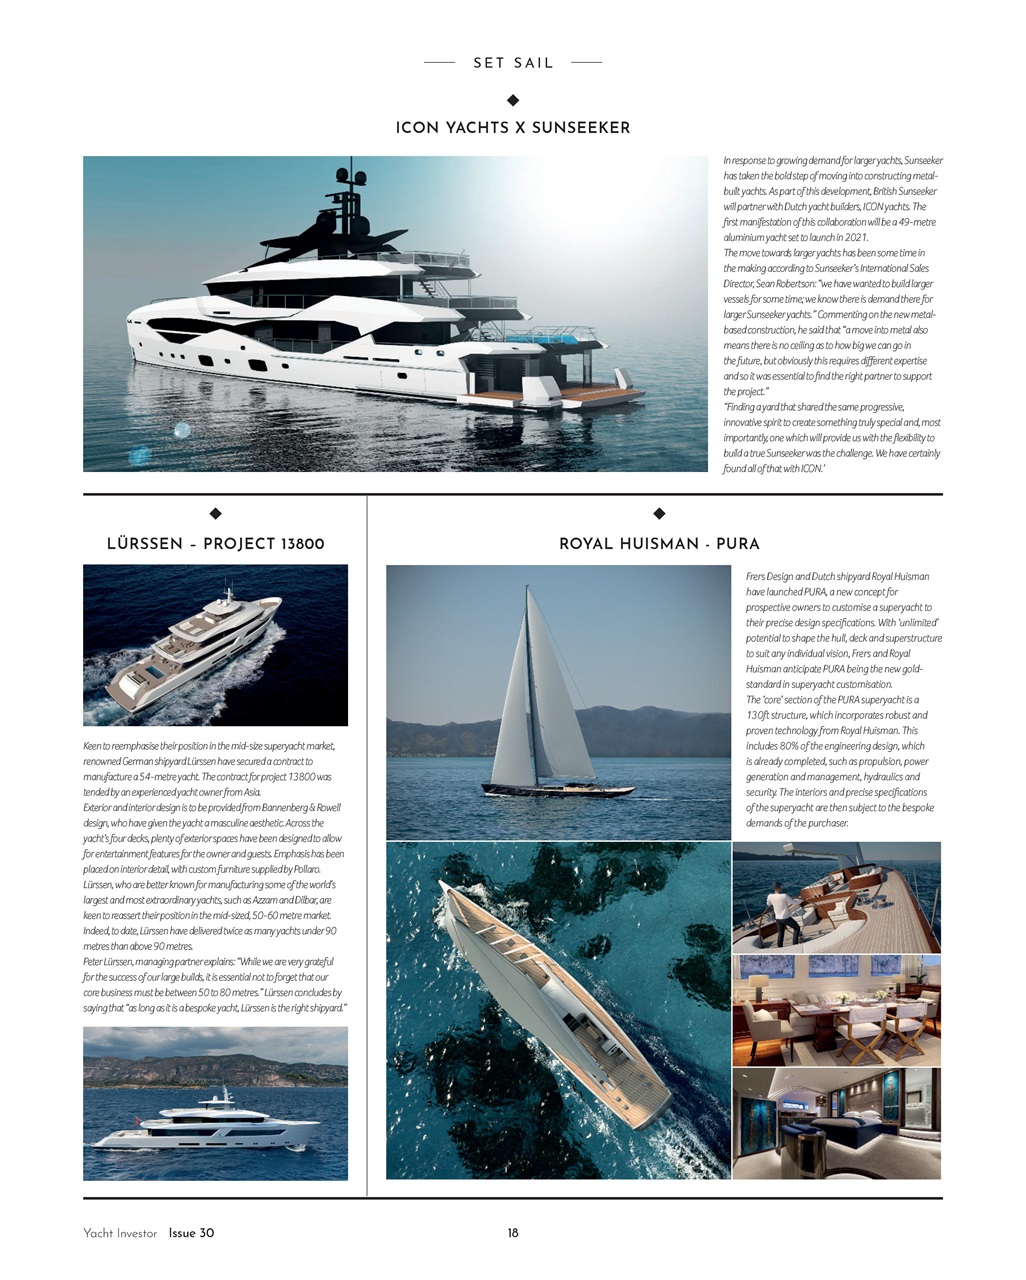 yacht investor magazine